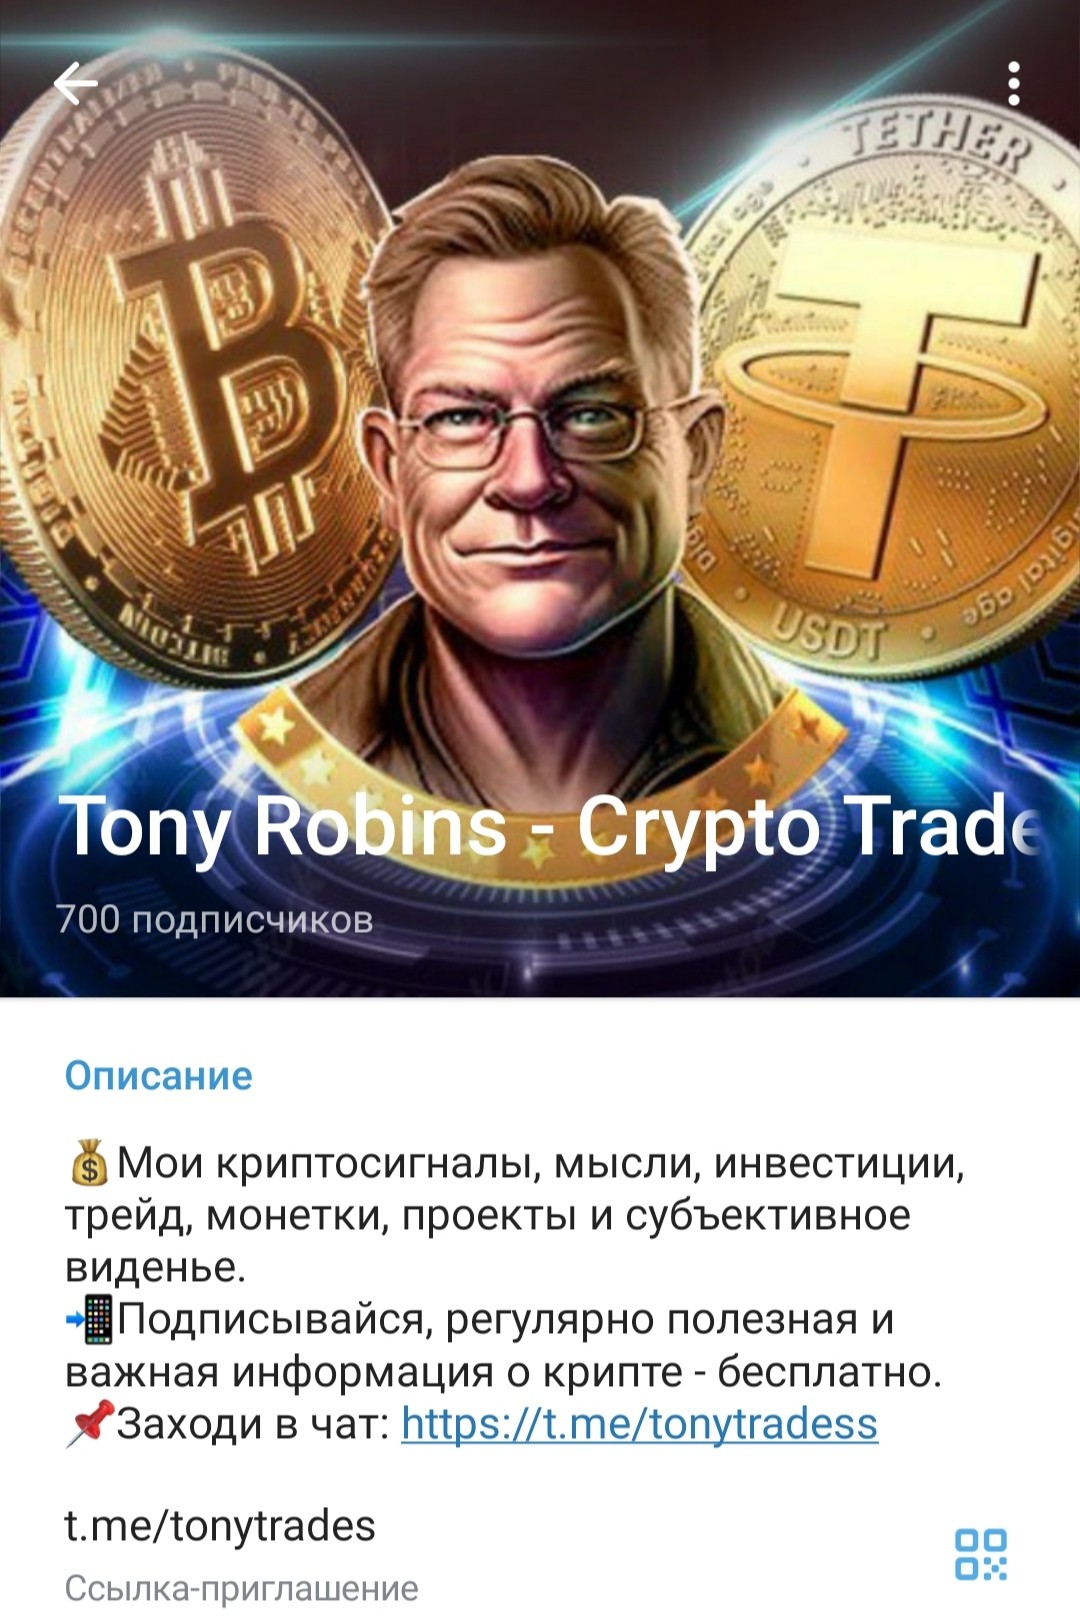 Обзор проекта Tony Robins Crypto Trades